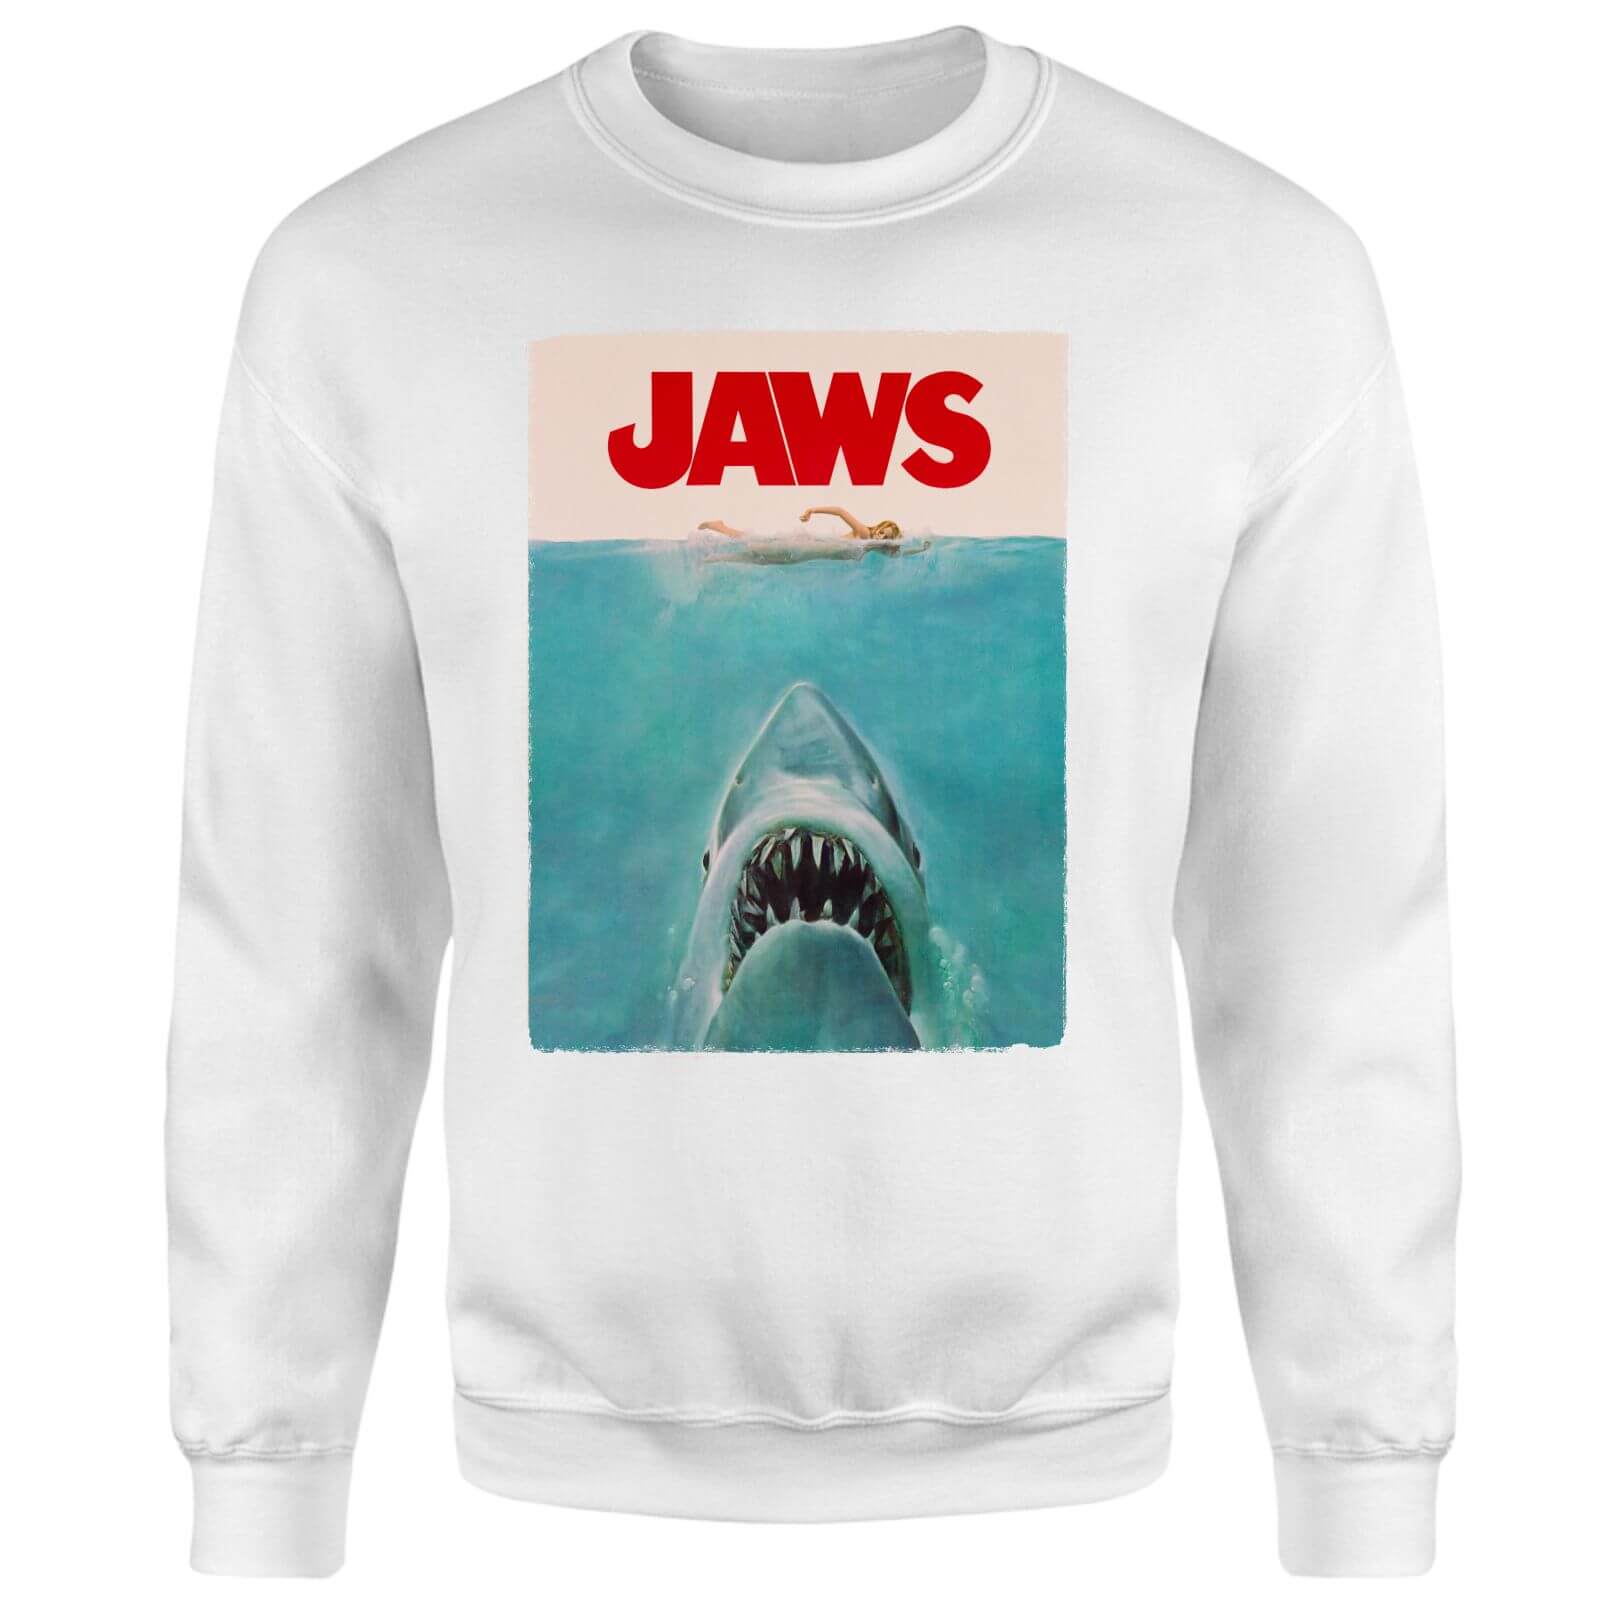 Universal Jaws Classic Poster Sweatshirt - White - XS - White